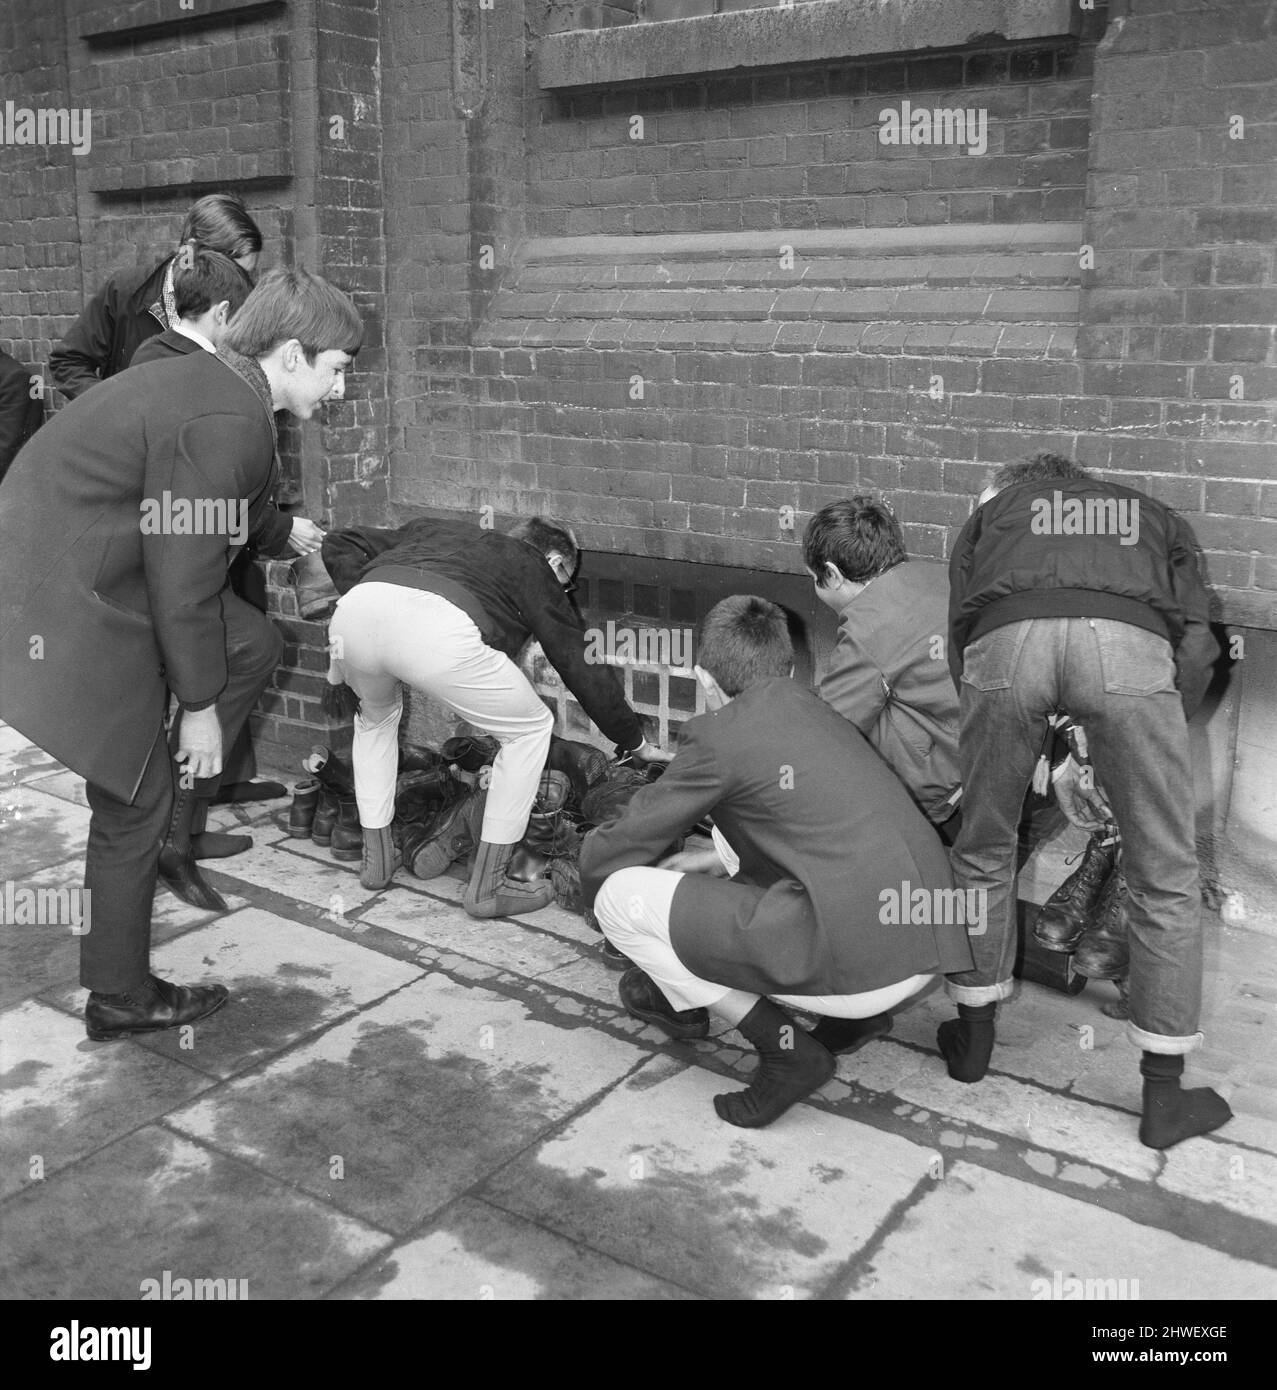 Skinheads treffen sich in der Farringdon Road, London. Zwanzig bis dreißig Jugendliche wurden entlang der Farringdon Road verfolgt, nachdem sie einen verbebten Zug und einen angeblichen Angriff auf einen Mann verübt hatten. Die Häupter wurden angehalten und mussten ihre Stiefel ausziehen, während die Polizei sie an einer Wand anstellte und sie durchsuchte. Bild zeigt: Jugendliche sammeln ihre Stiefel nach polizeilichen Ermittlungen. 4.. April 1970. Stockfoto